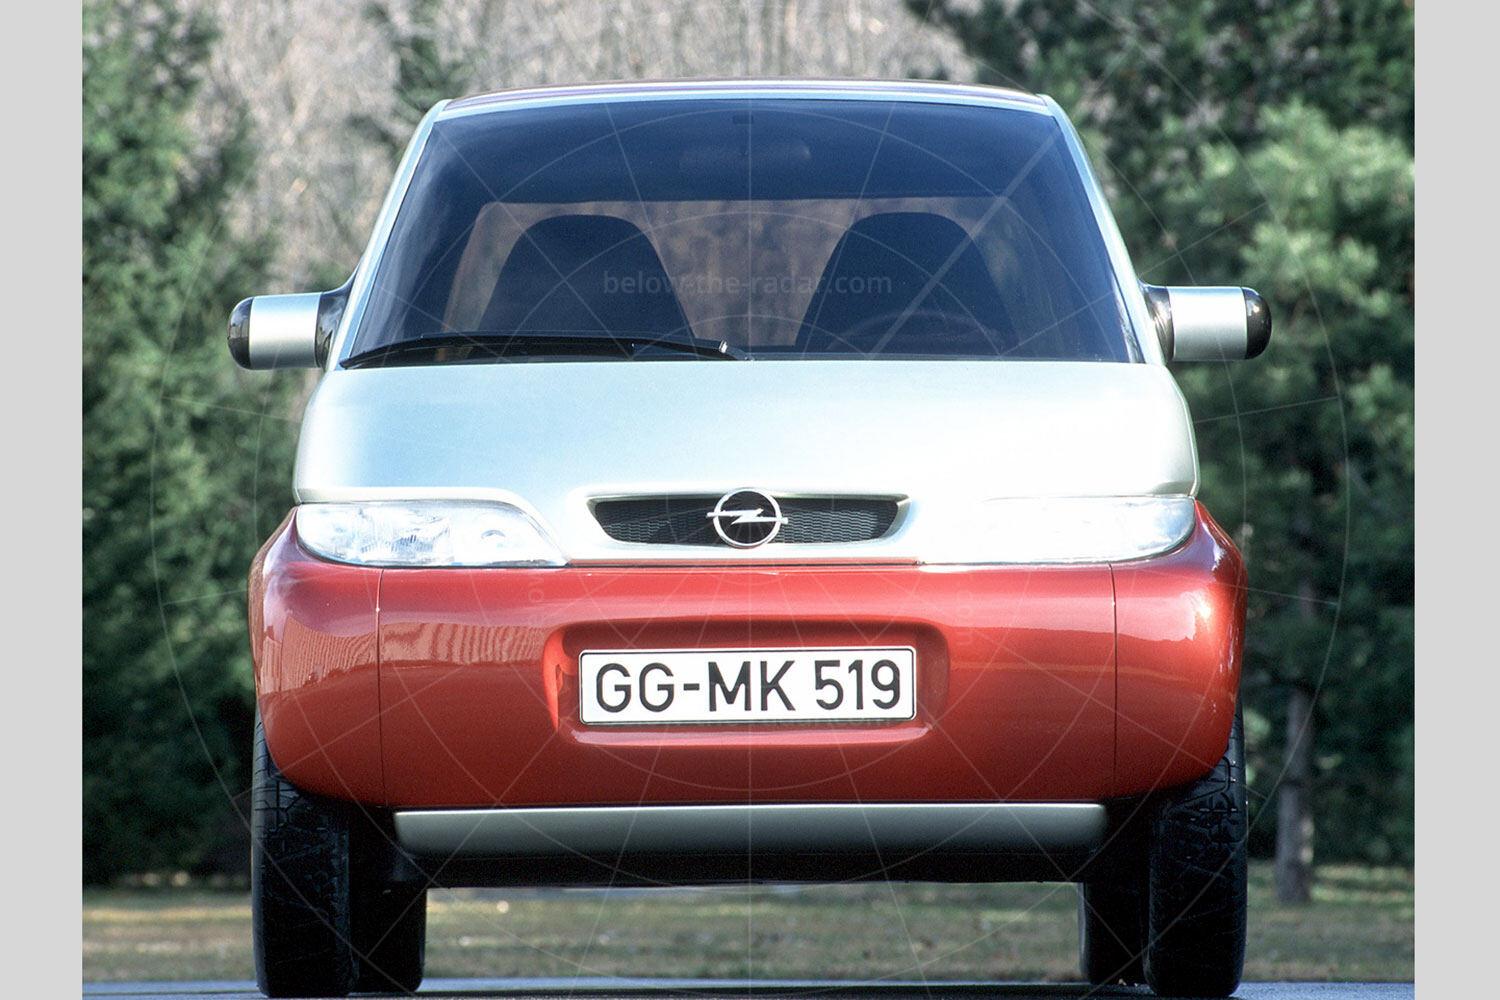 Opel Maxx four-door Pic: GM | Opel Maxx four-door